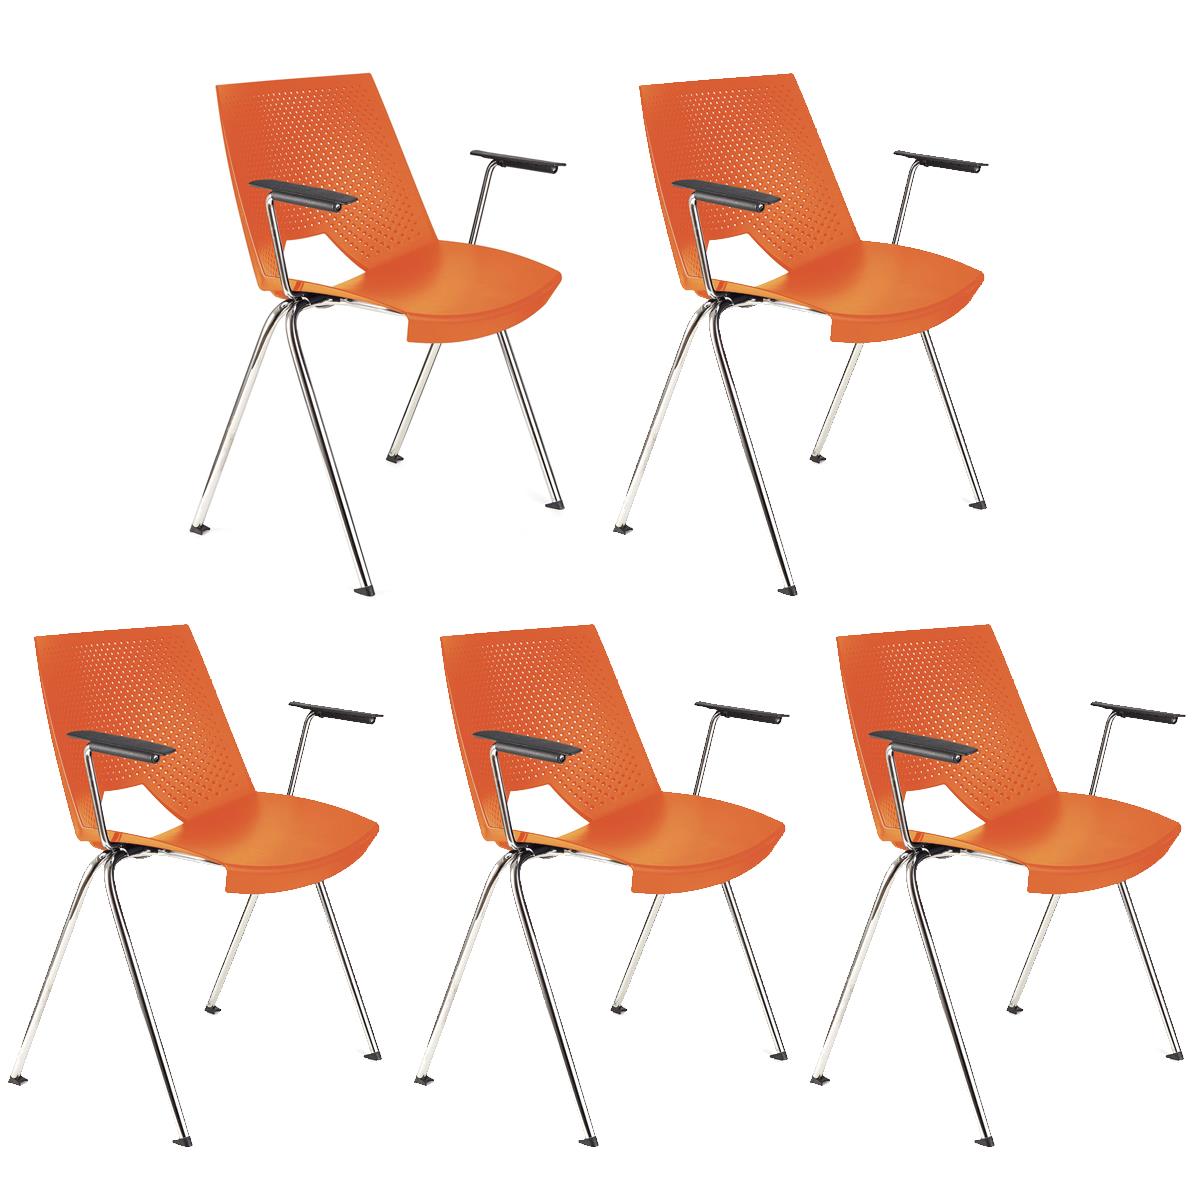 Lote de 5 sillas de Confidente ENZO CON BRAZOS, Cómodas y Prácticas, Apilables, Color Naranja